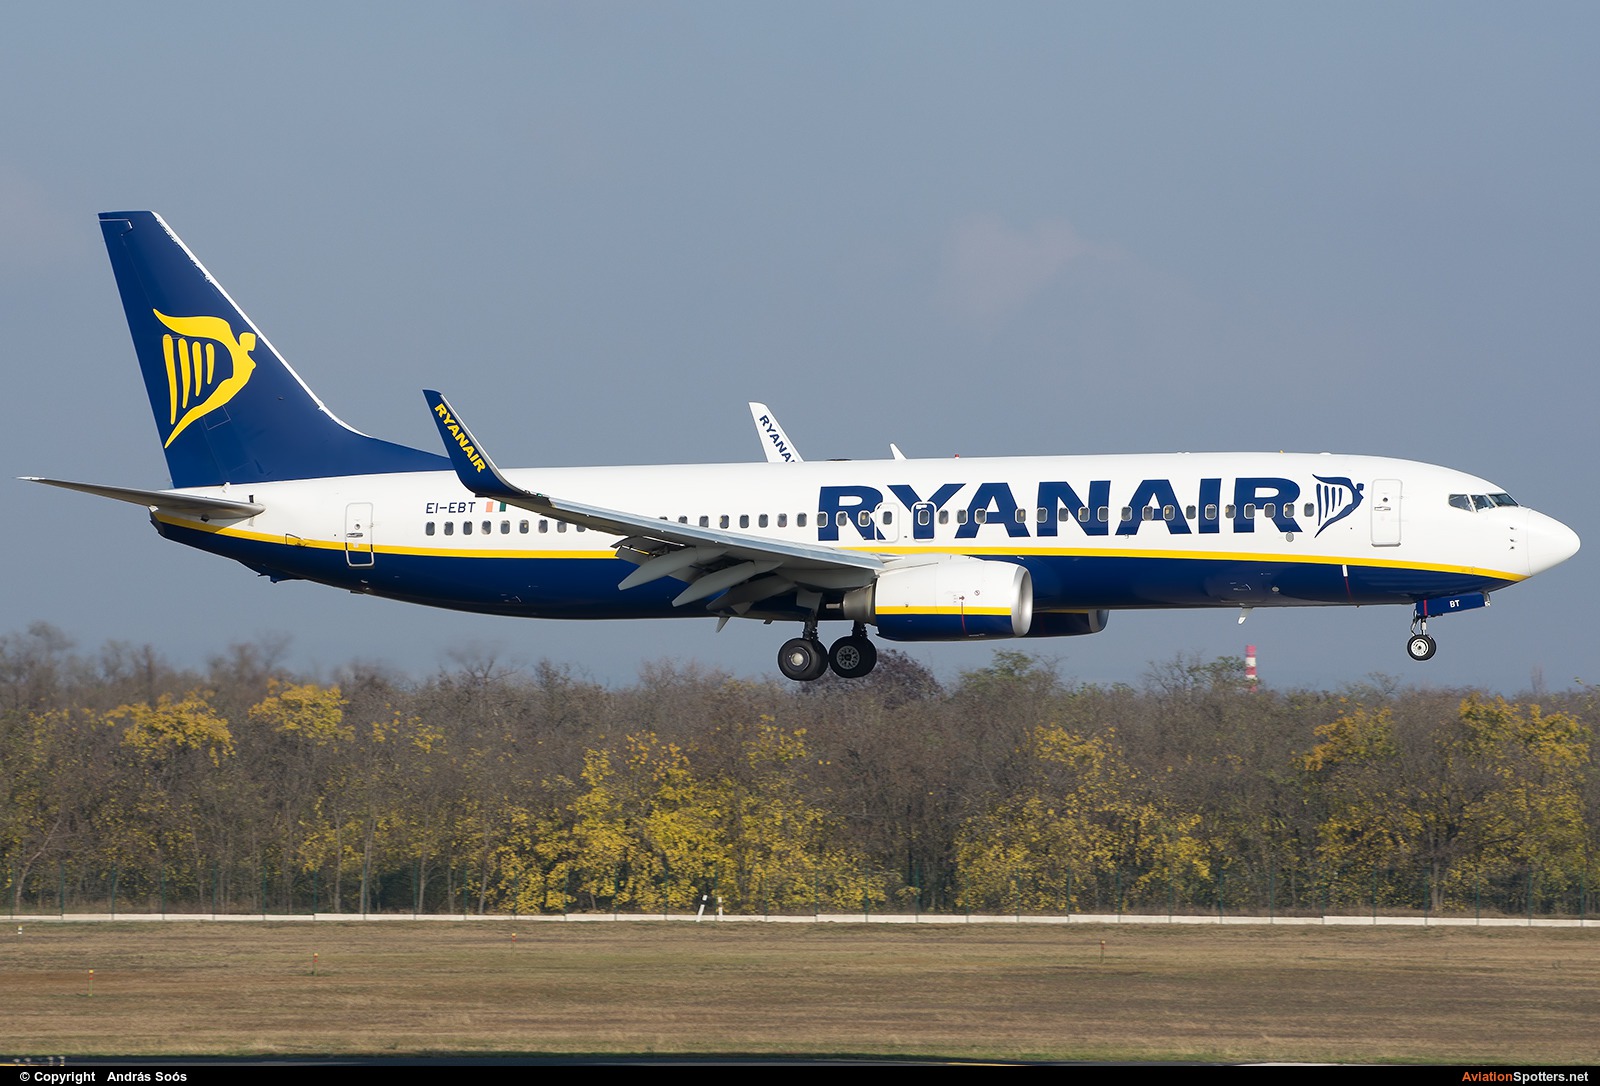 Ryanair  -  737-800  (EI-EBT) By András Soós (sas1965)